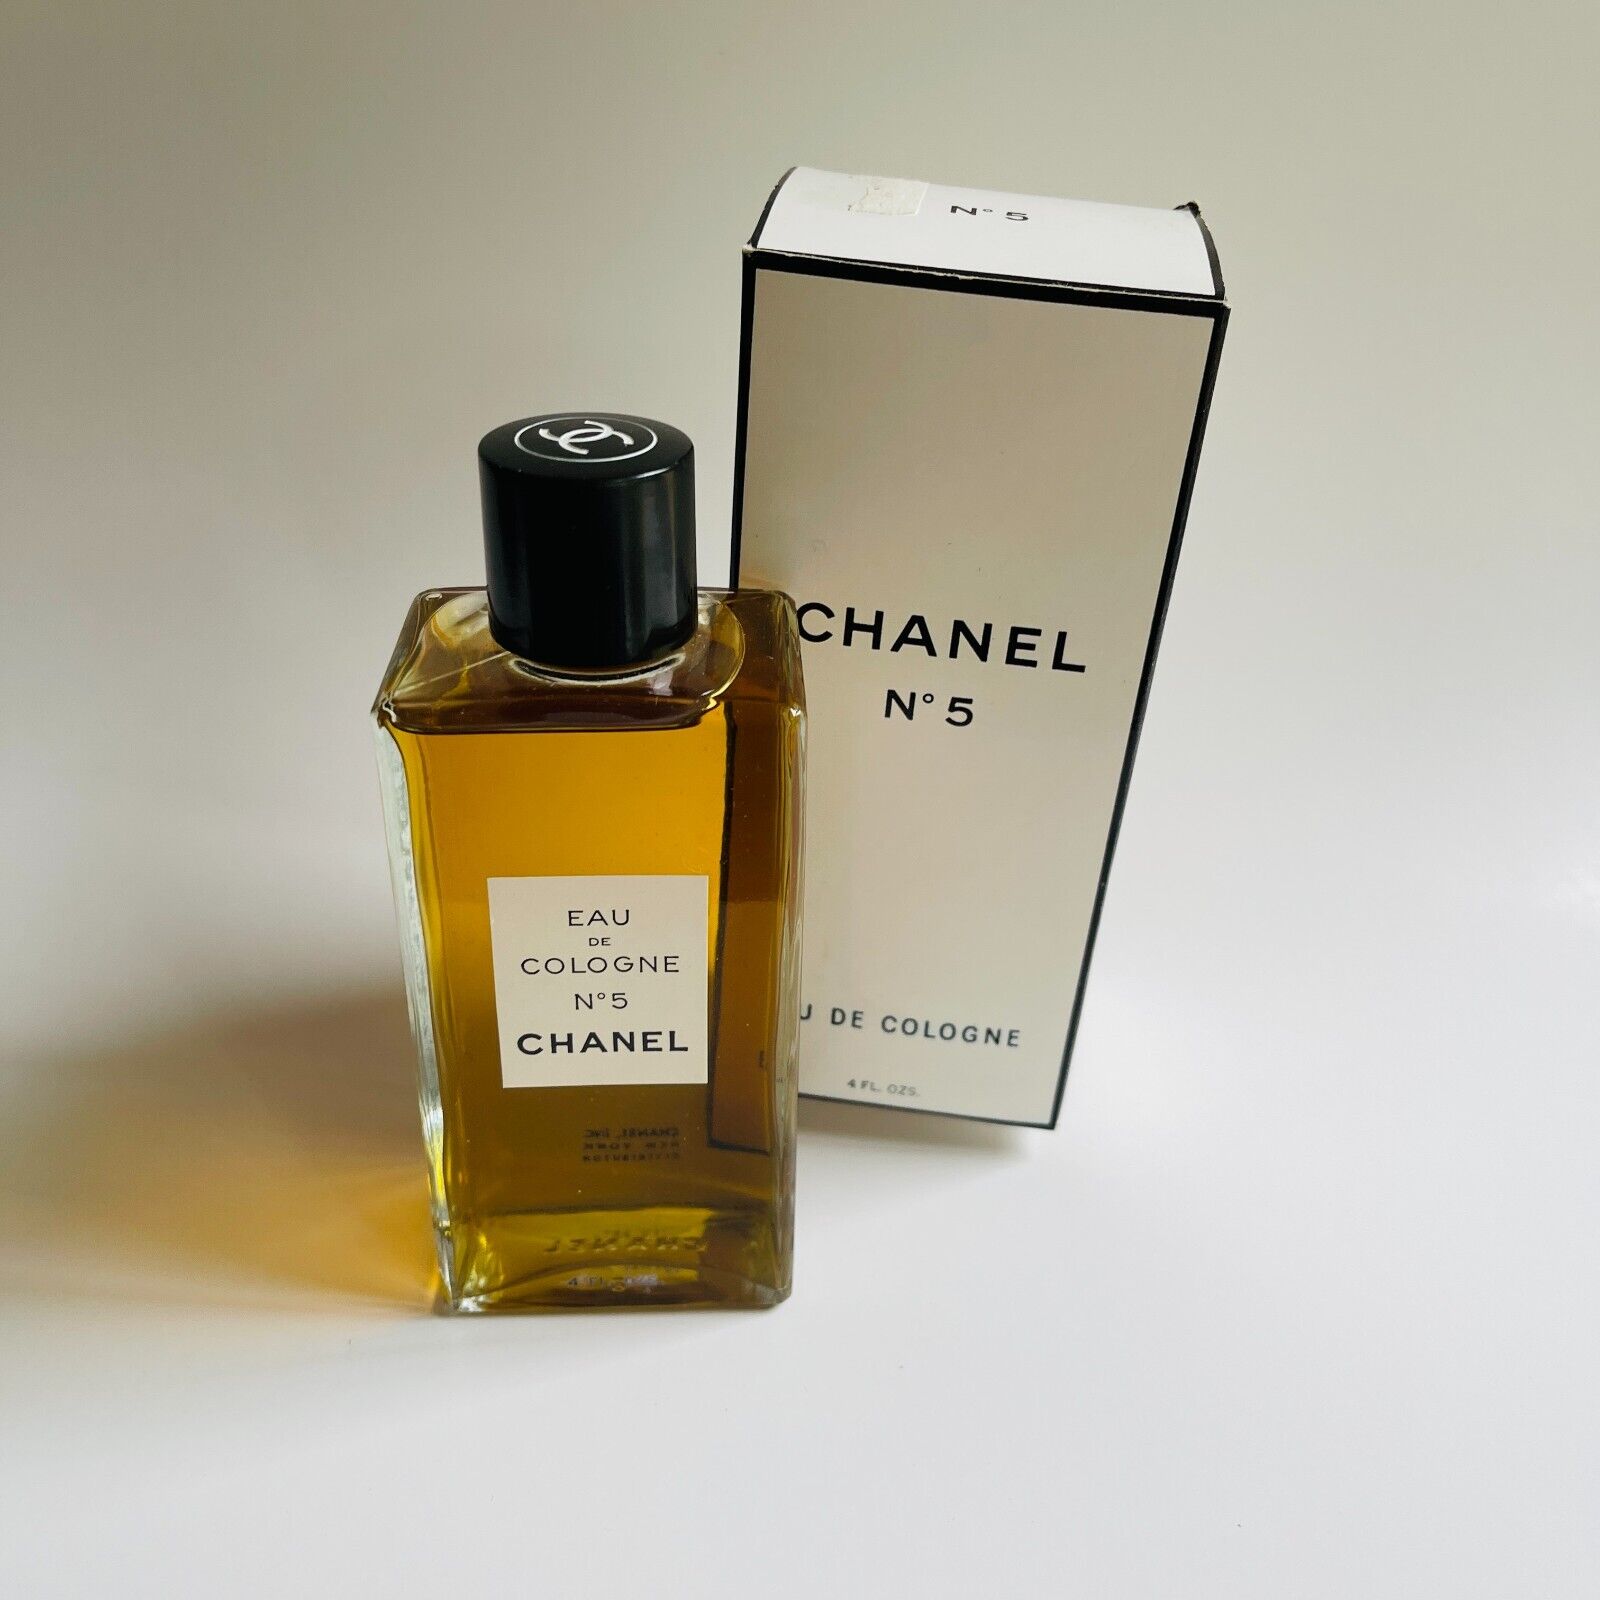 Chanel N° 5 cumple 100 años sin una gota rancia, TENDENCIAS